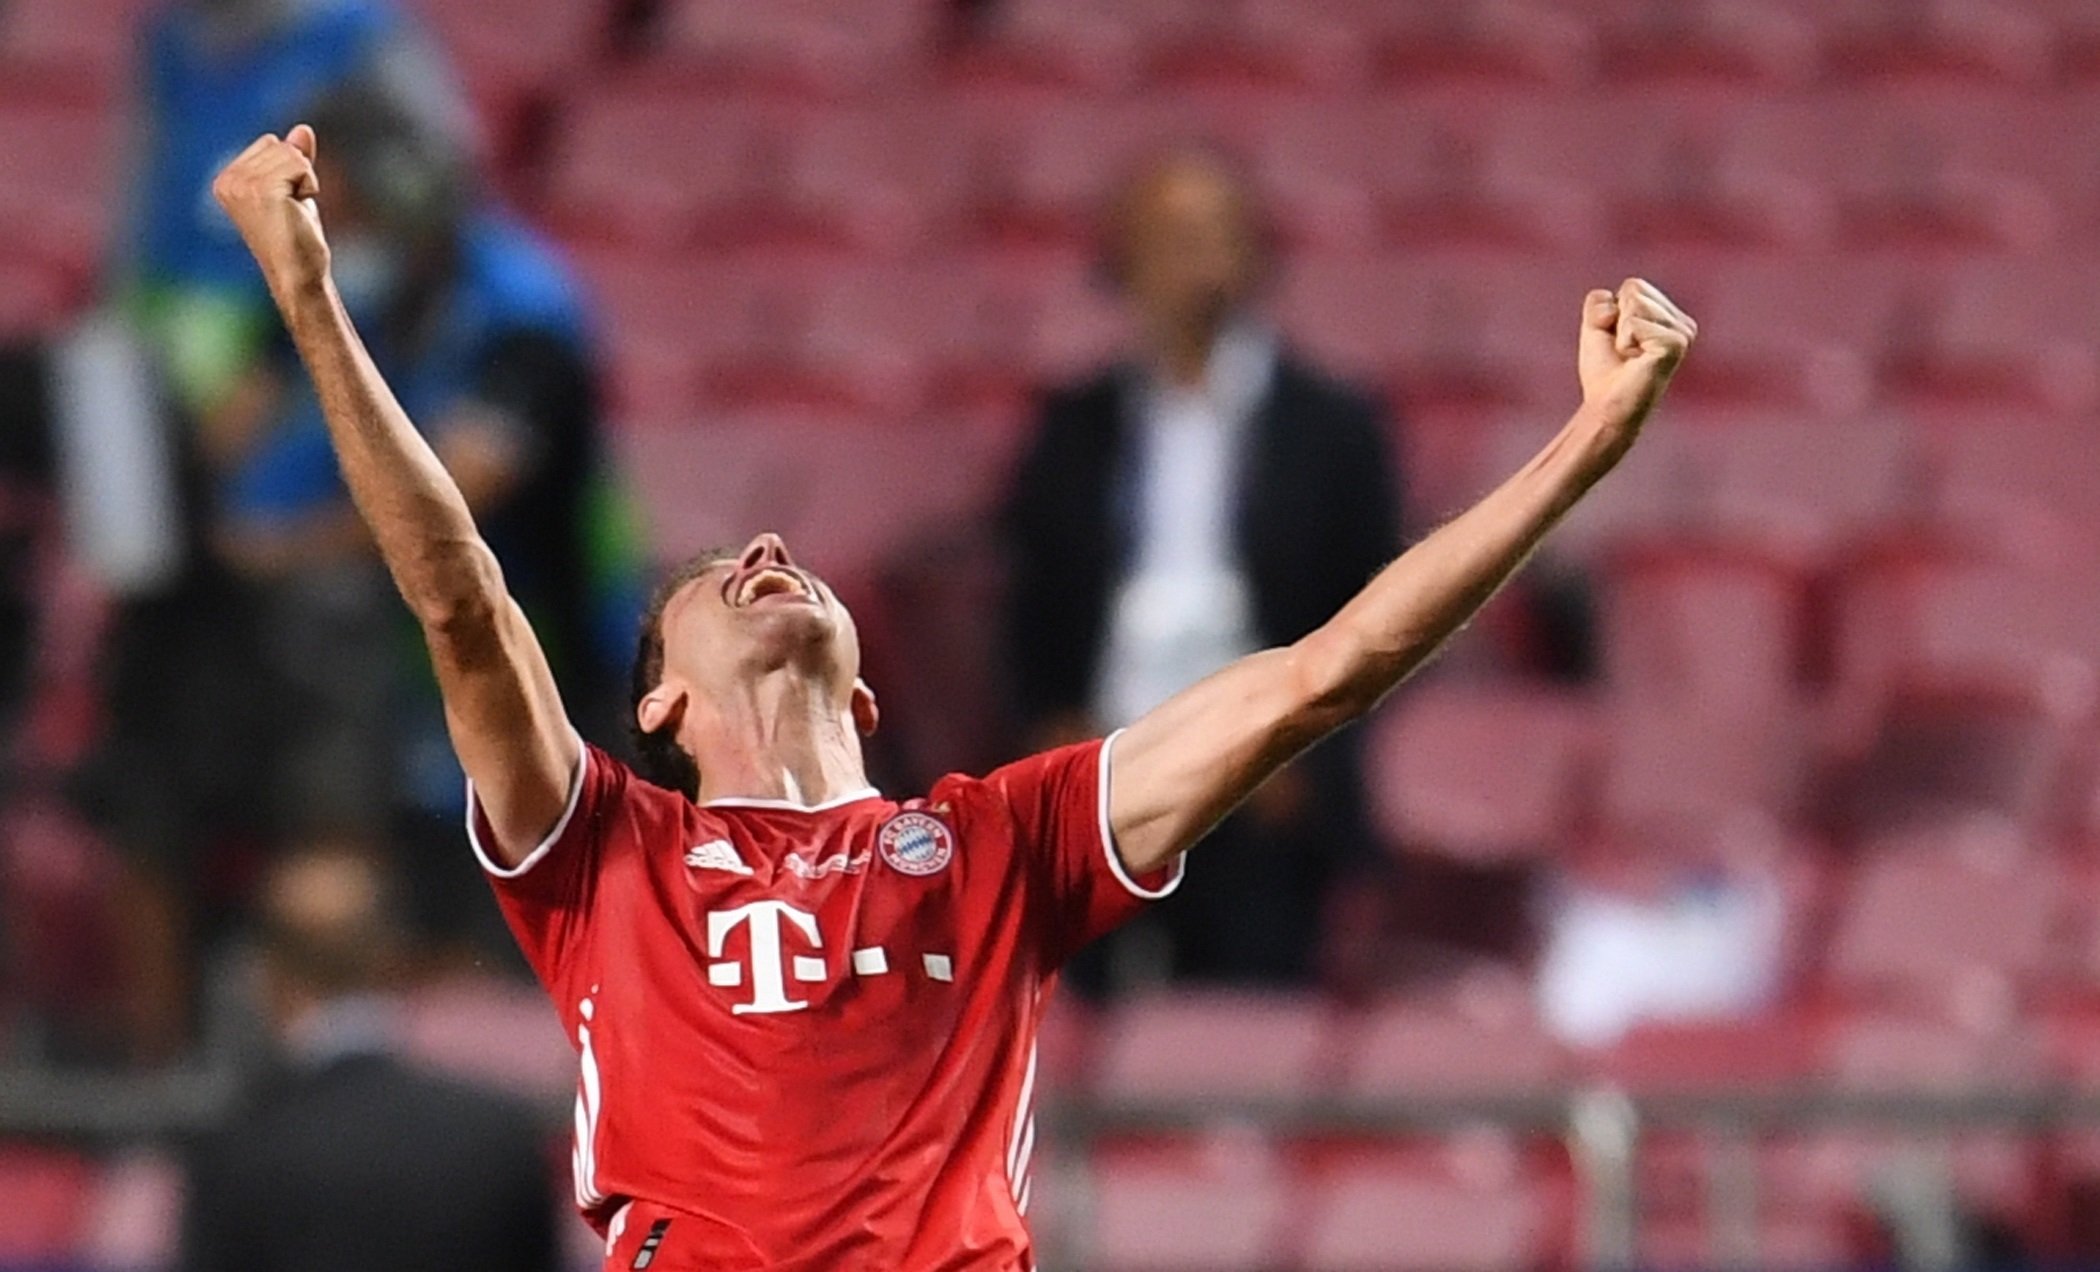 El Bayern de Munich entra en el podio europeo después de ganar la sexta Champions